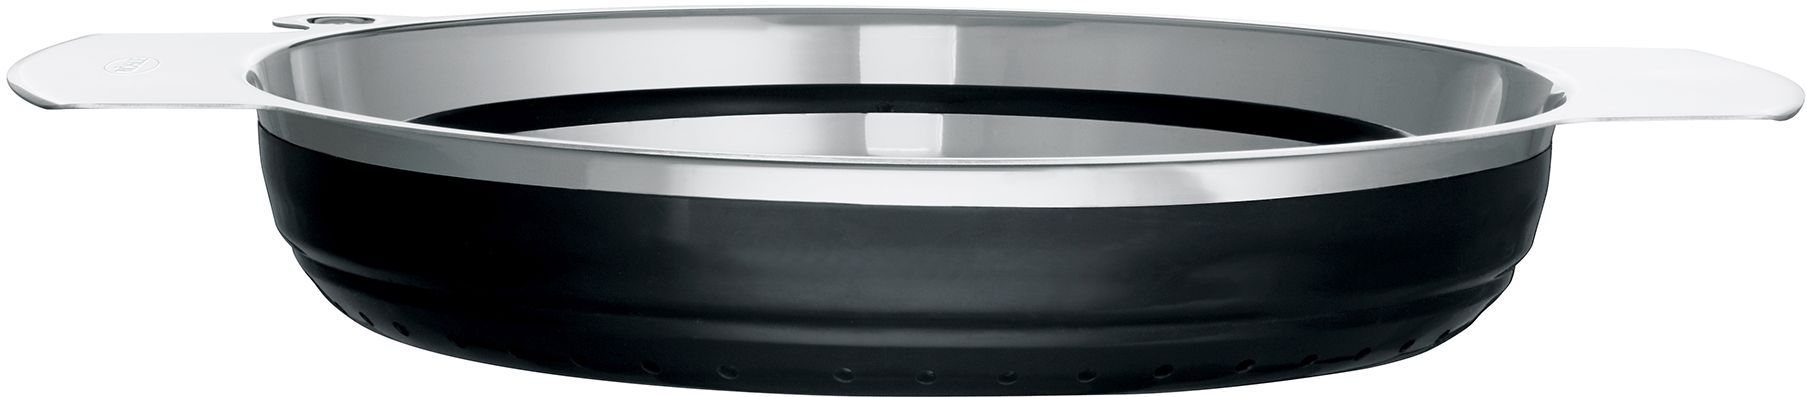 Passoire Pliable Acier Silicone RÖSLE 24 cm Noir - Rösle - Passoire Pliable  - Ustensiles de cuisine - Ustensile Rösle - FRAISE DES BOIS